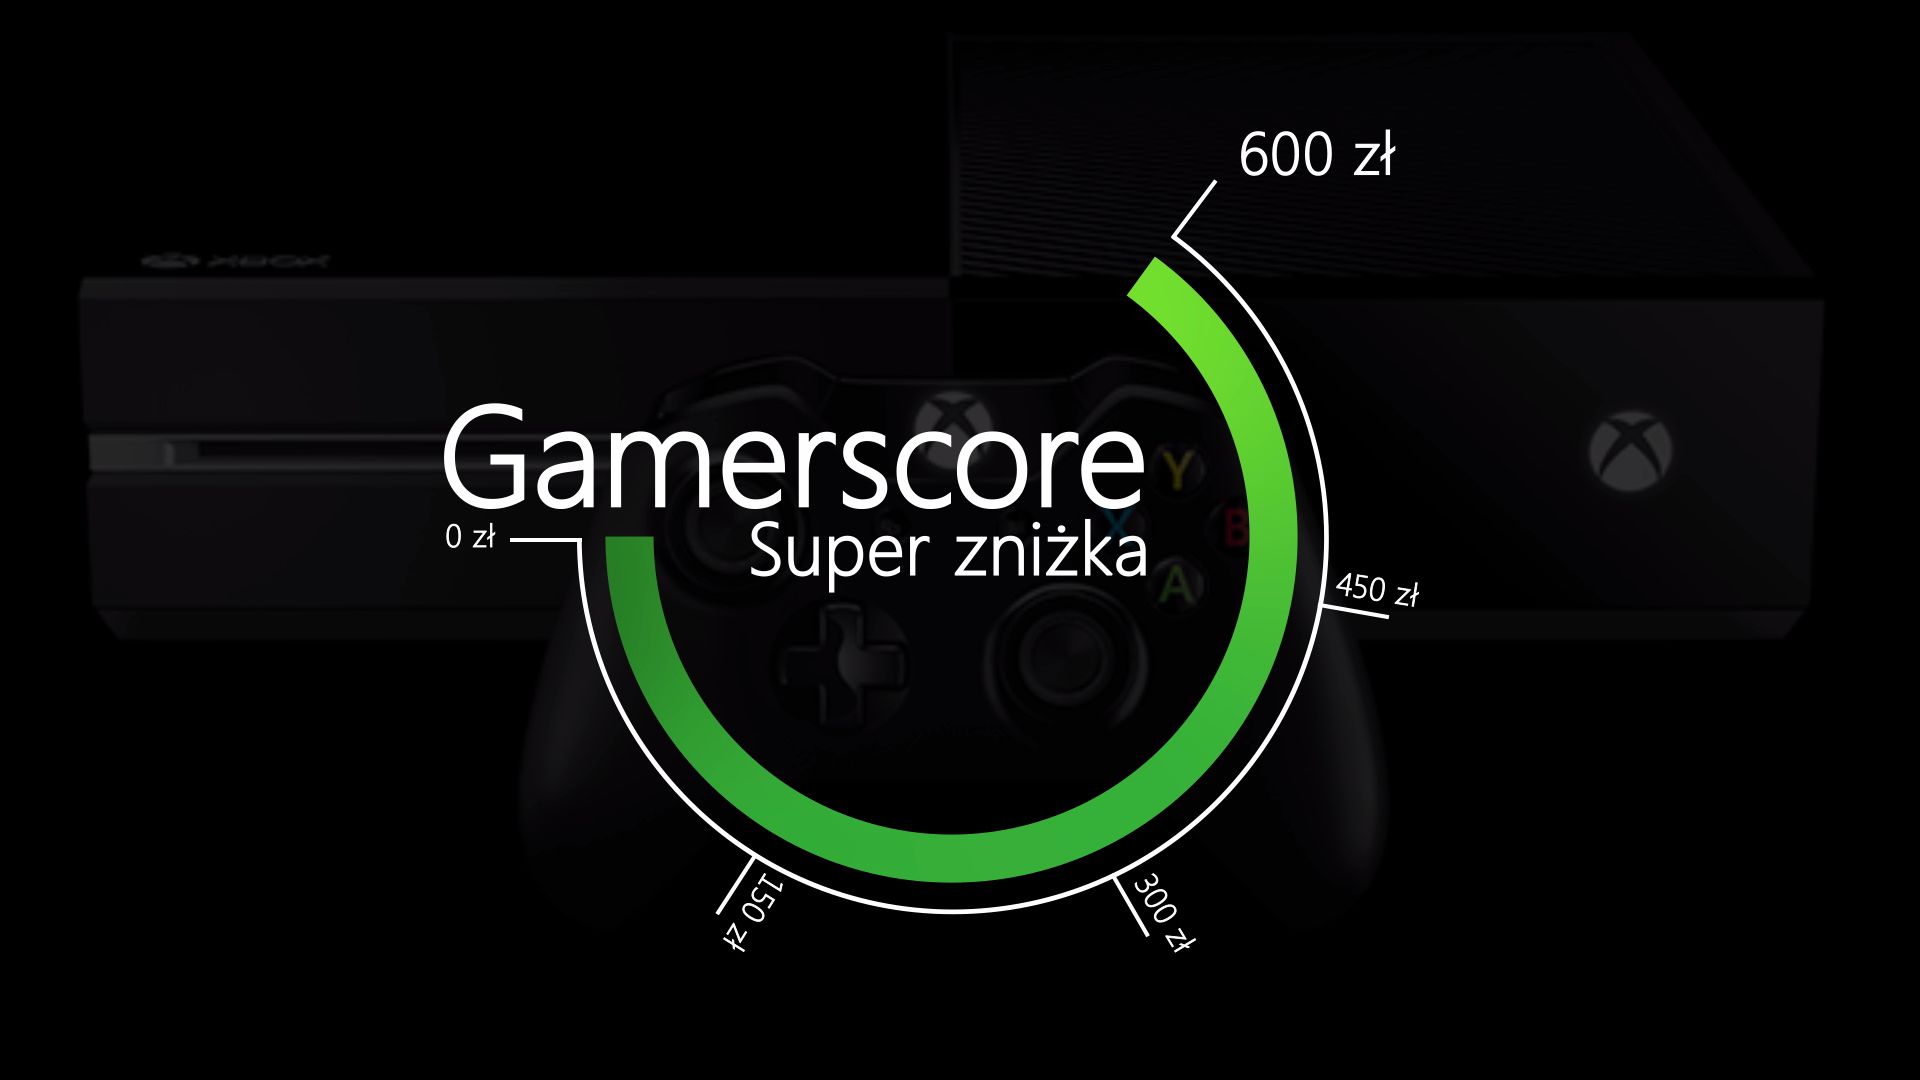 Super Zniżka za Gamerscore a